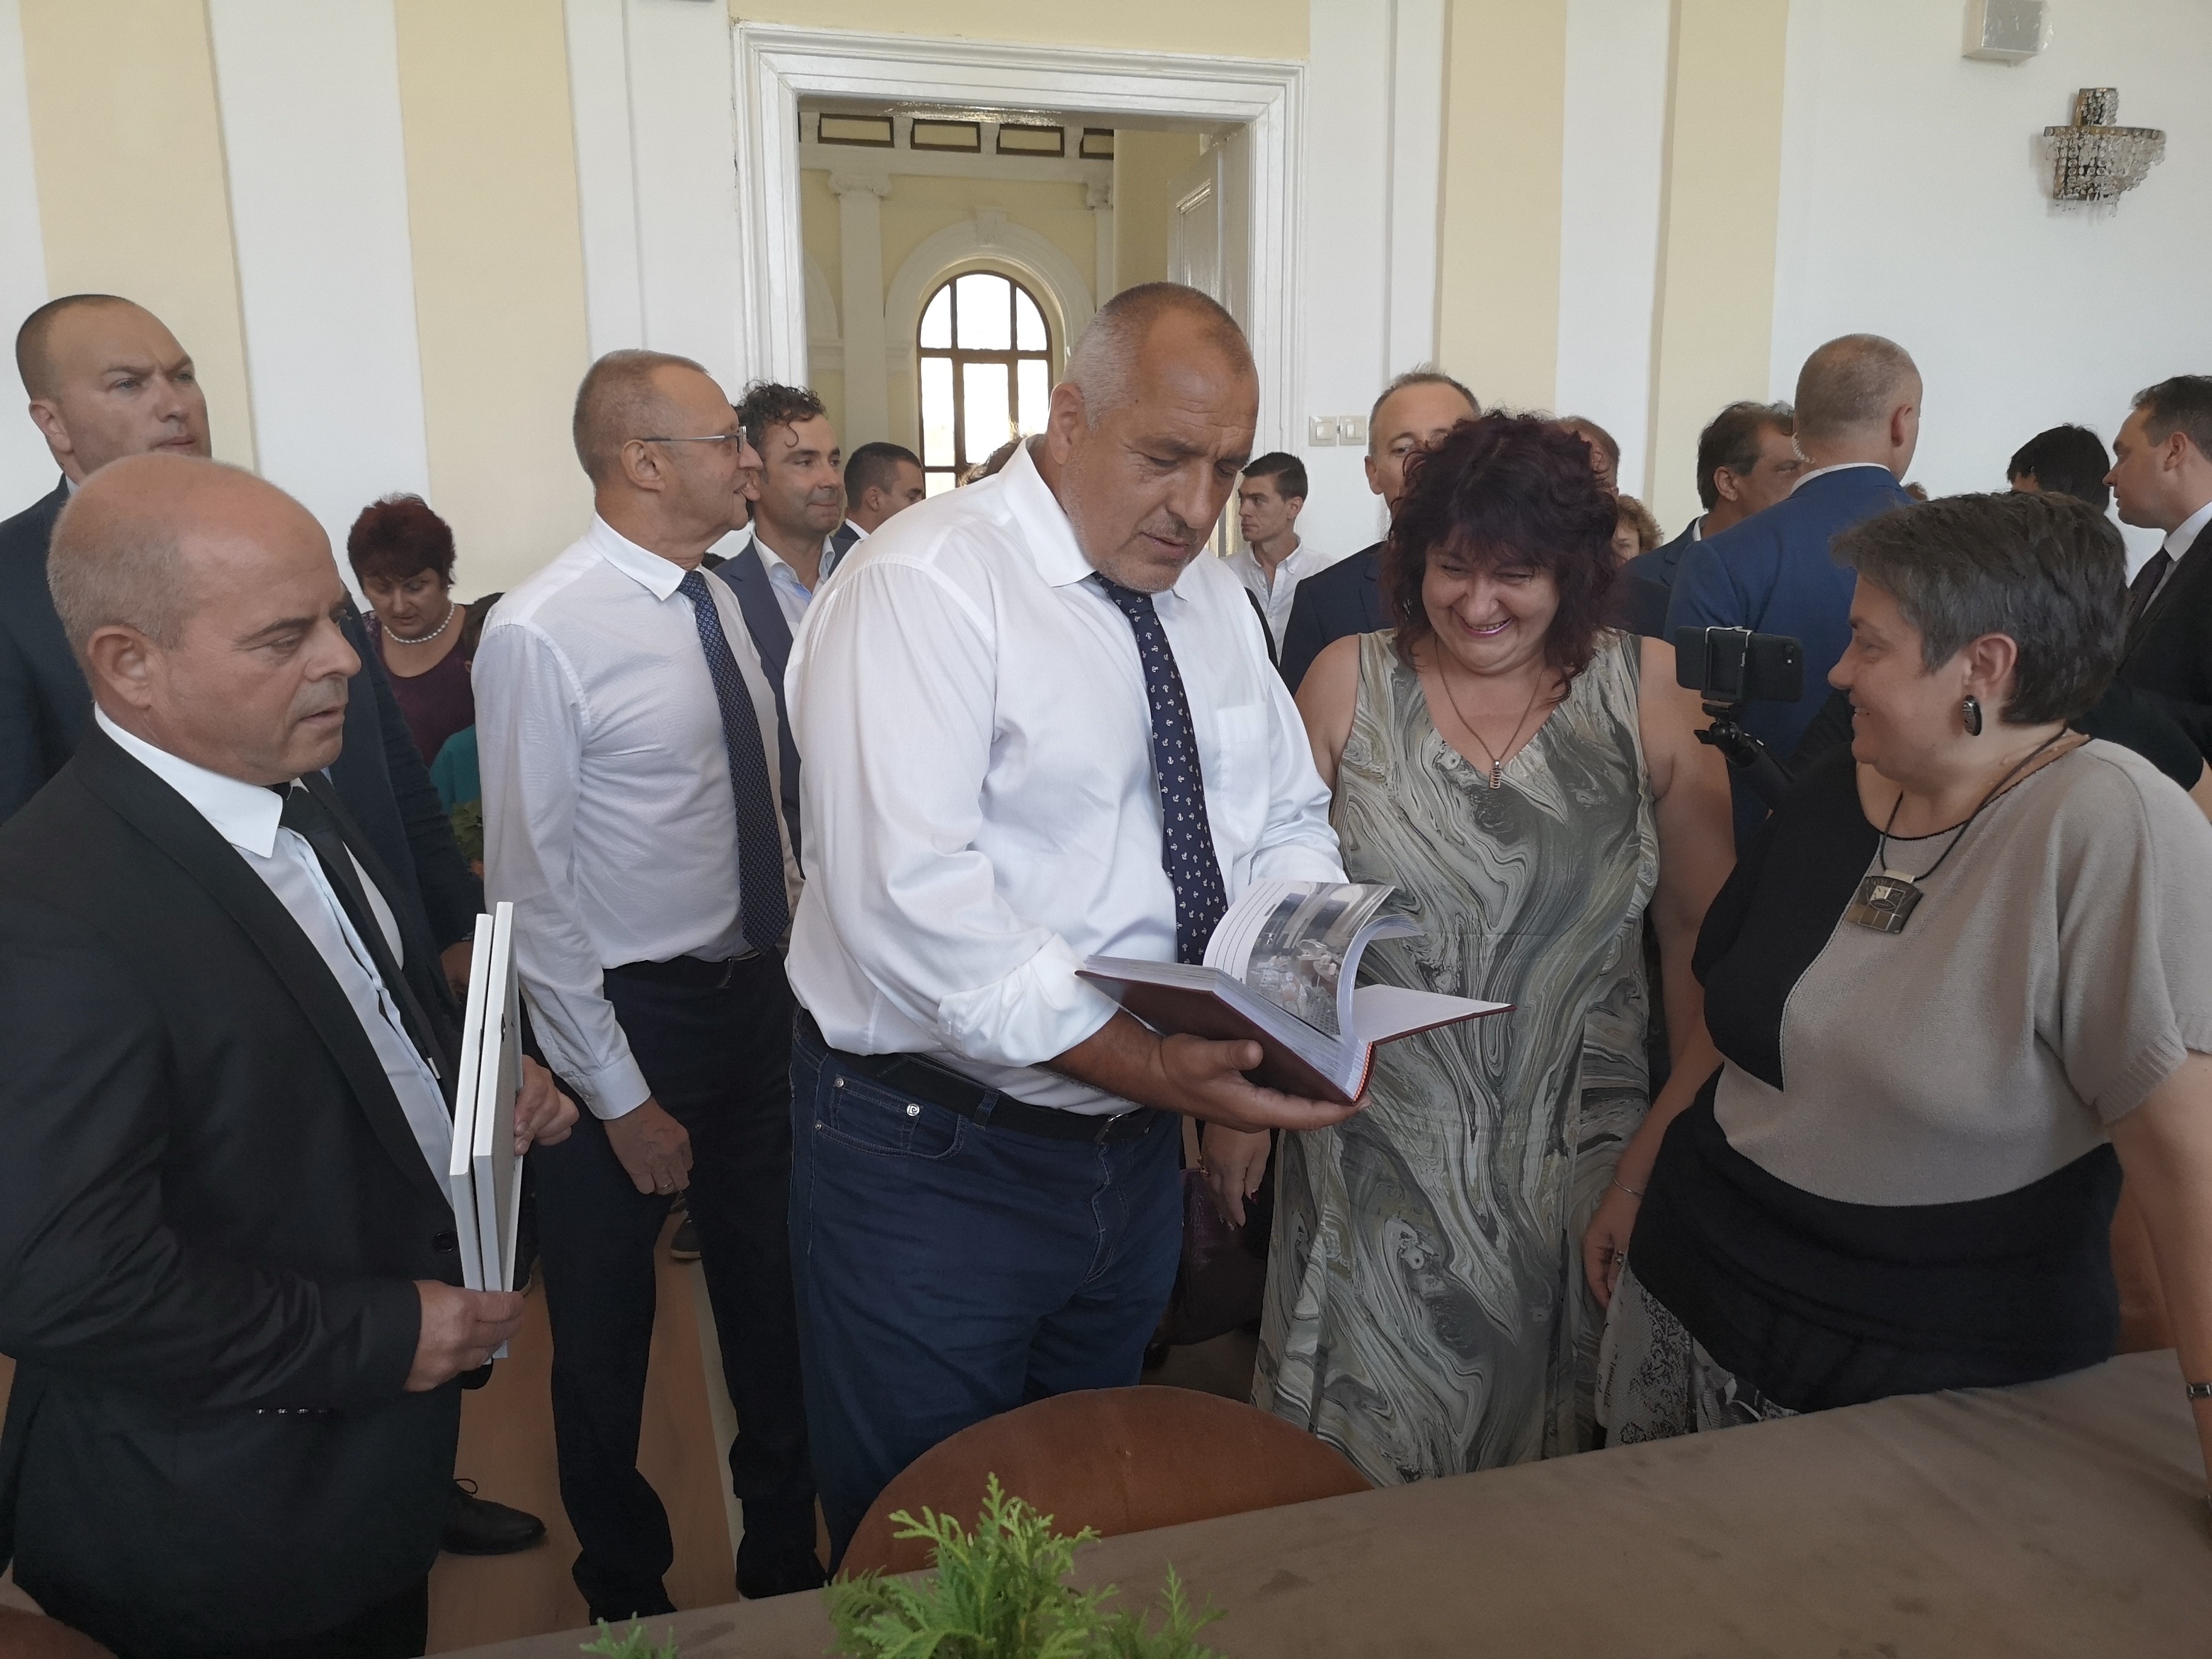    Премиерът Бойко Борисов посети изцяло обновената сграда на СУ „Христо Ботев“ в Русе